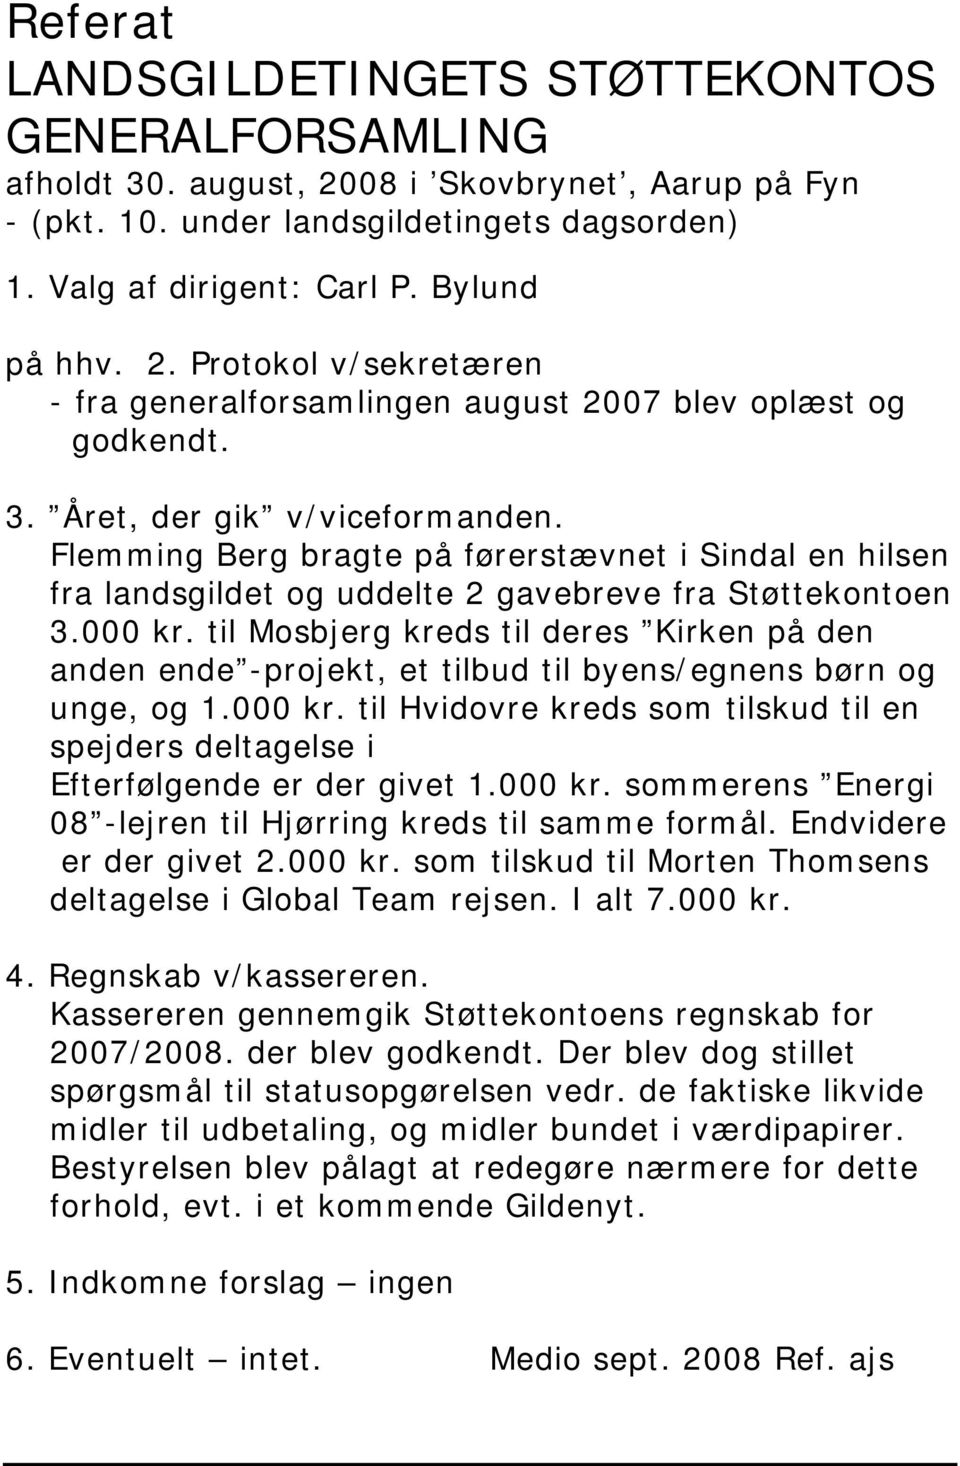 Flemming Berg bragte på førerstævnet i Sindal en hilsen fra landsgildet og uddelte 2 gavebreve fra Støttekontoen 3.000 kr.